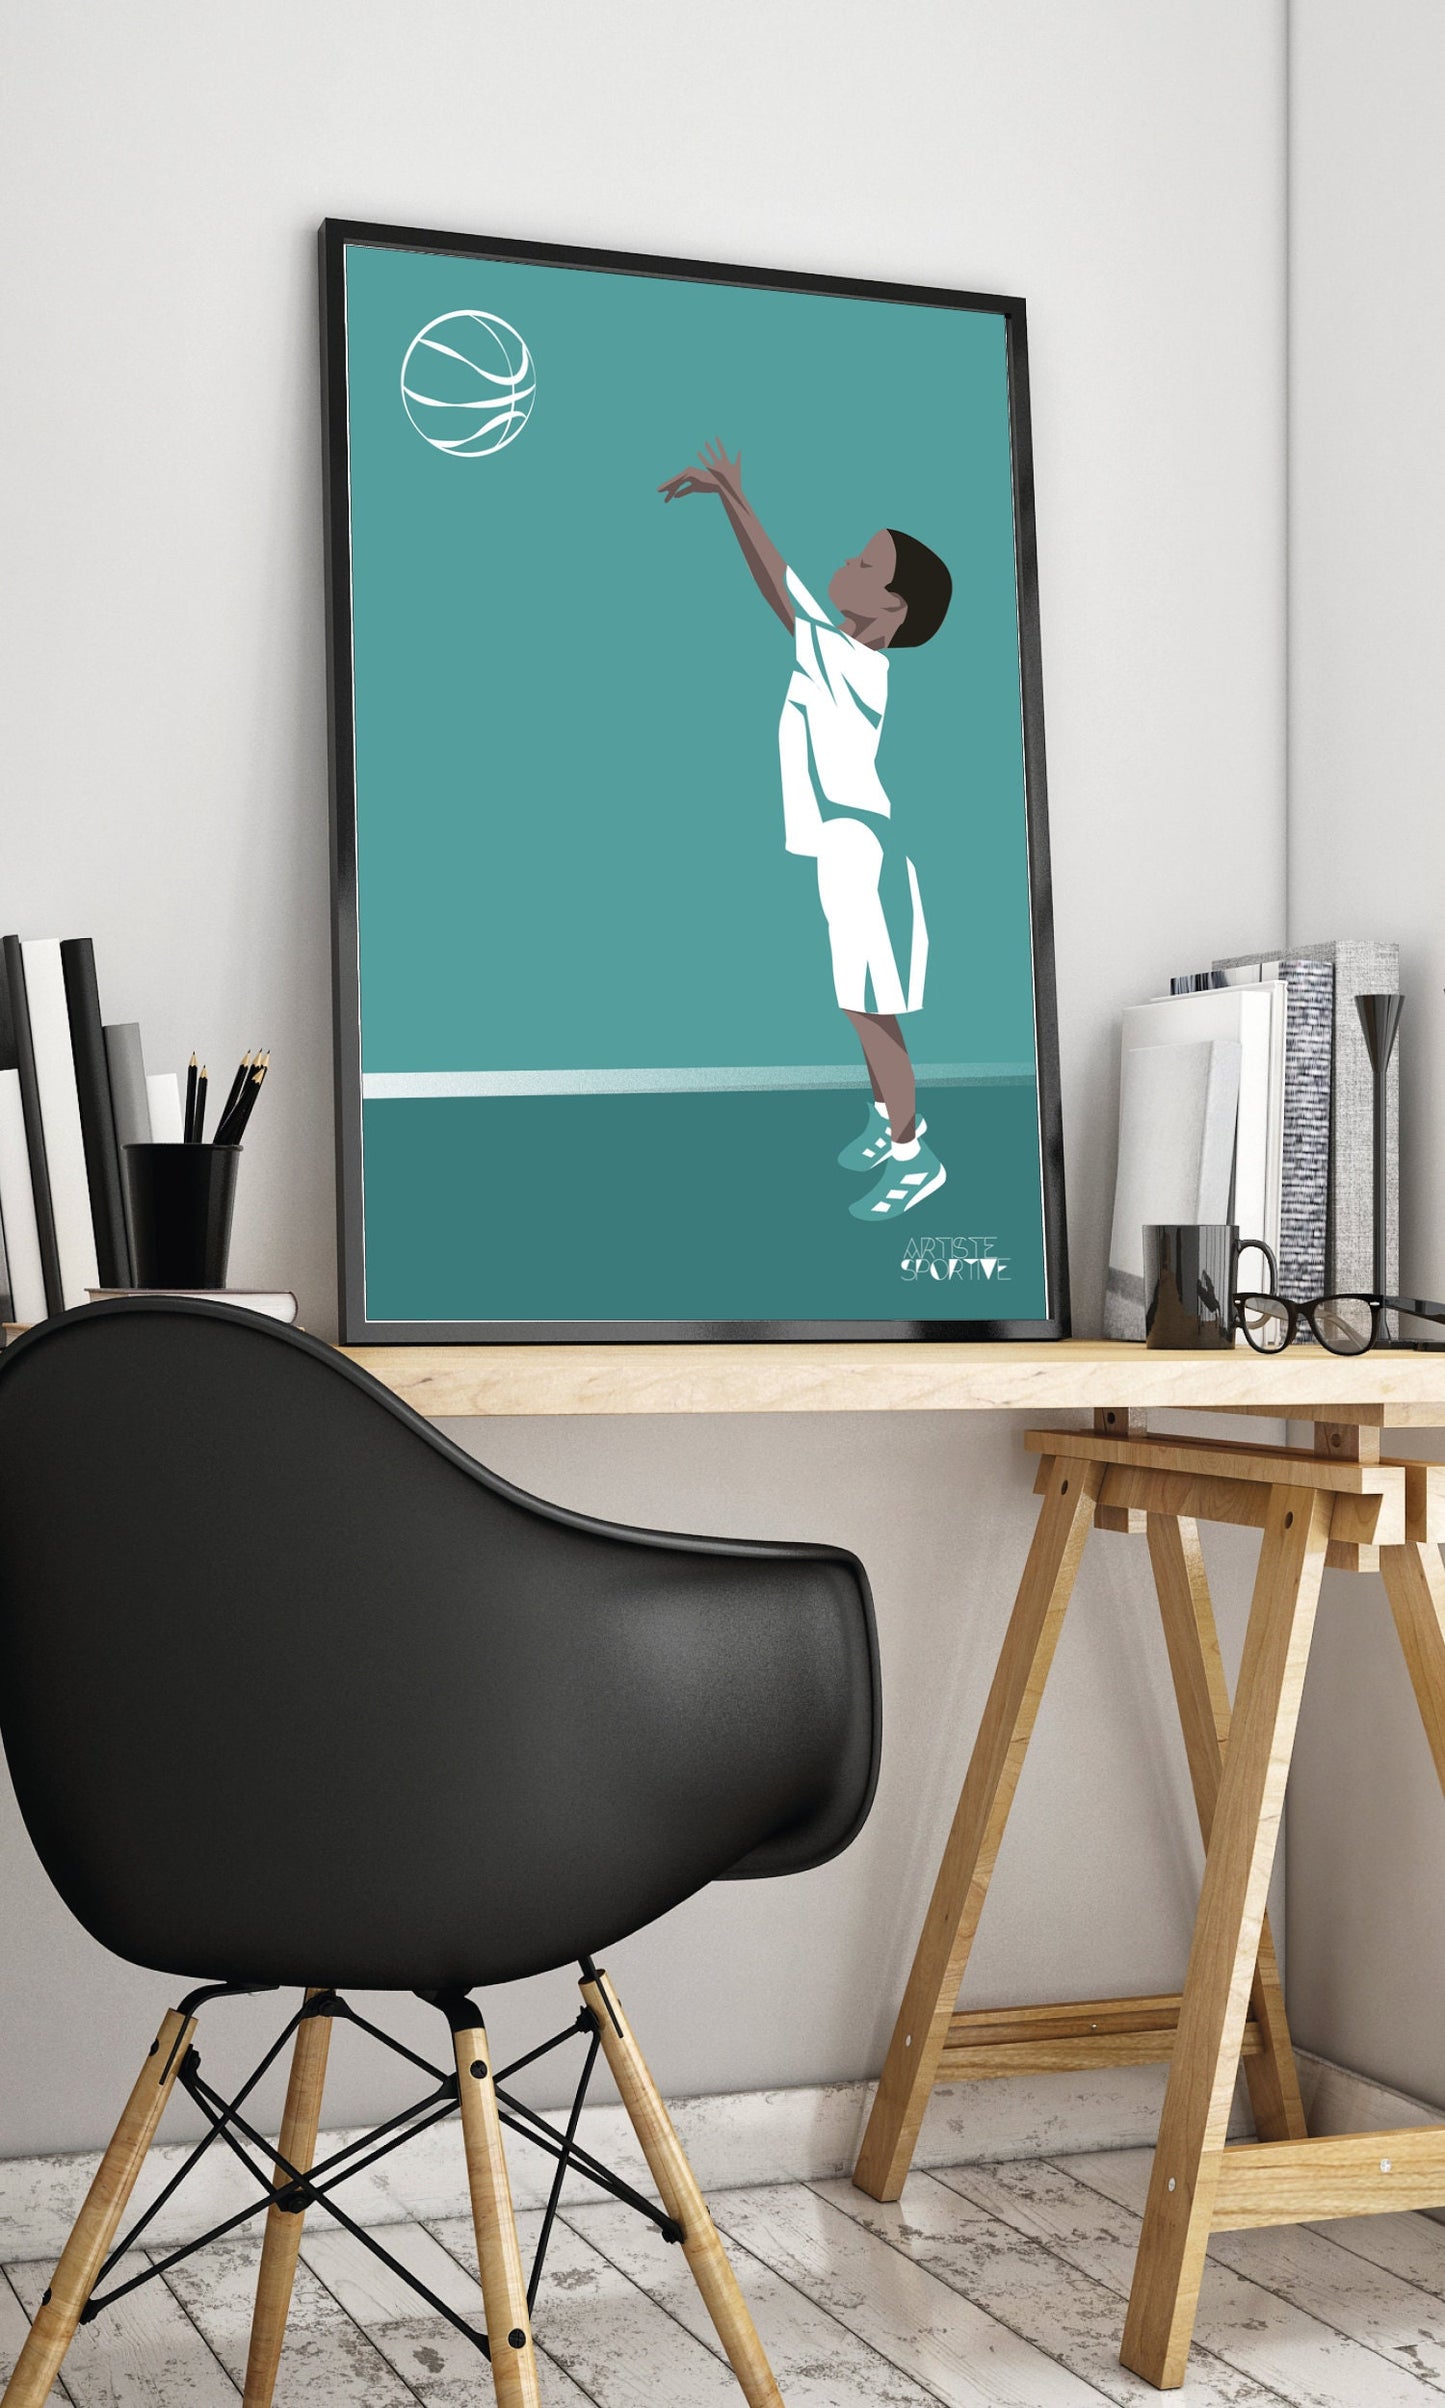 Basketball poster "The boy who plays basketball"